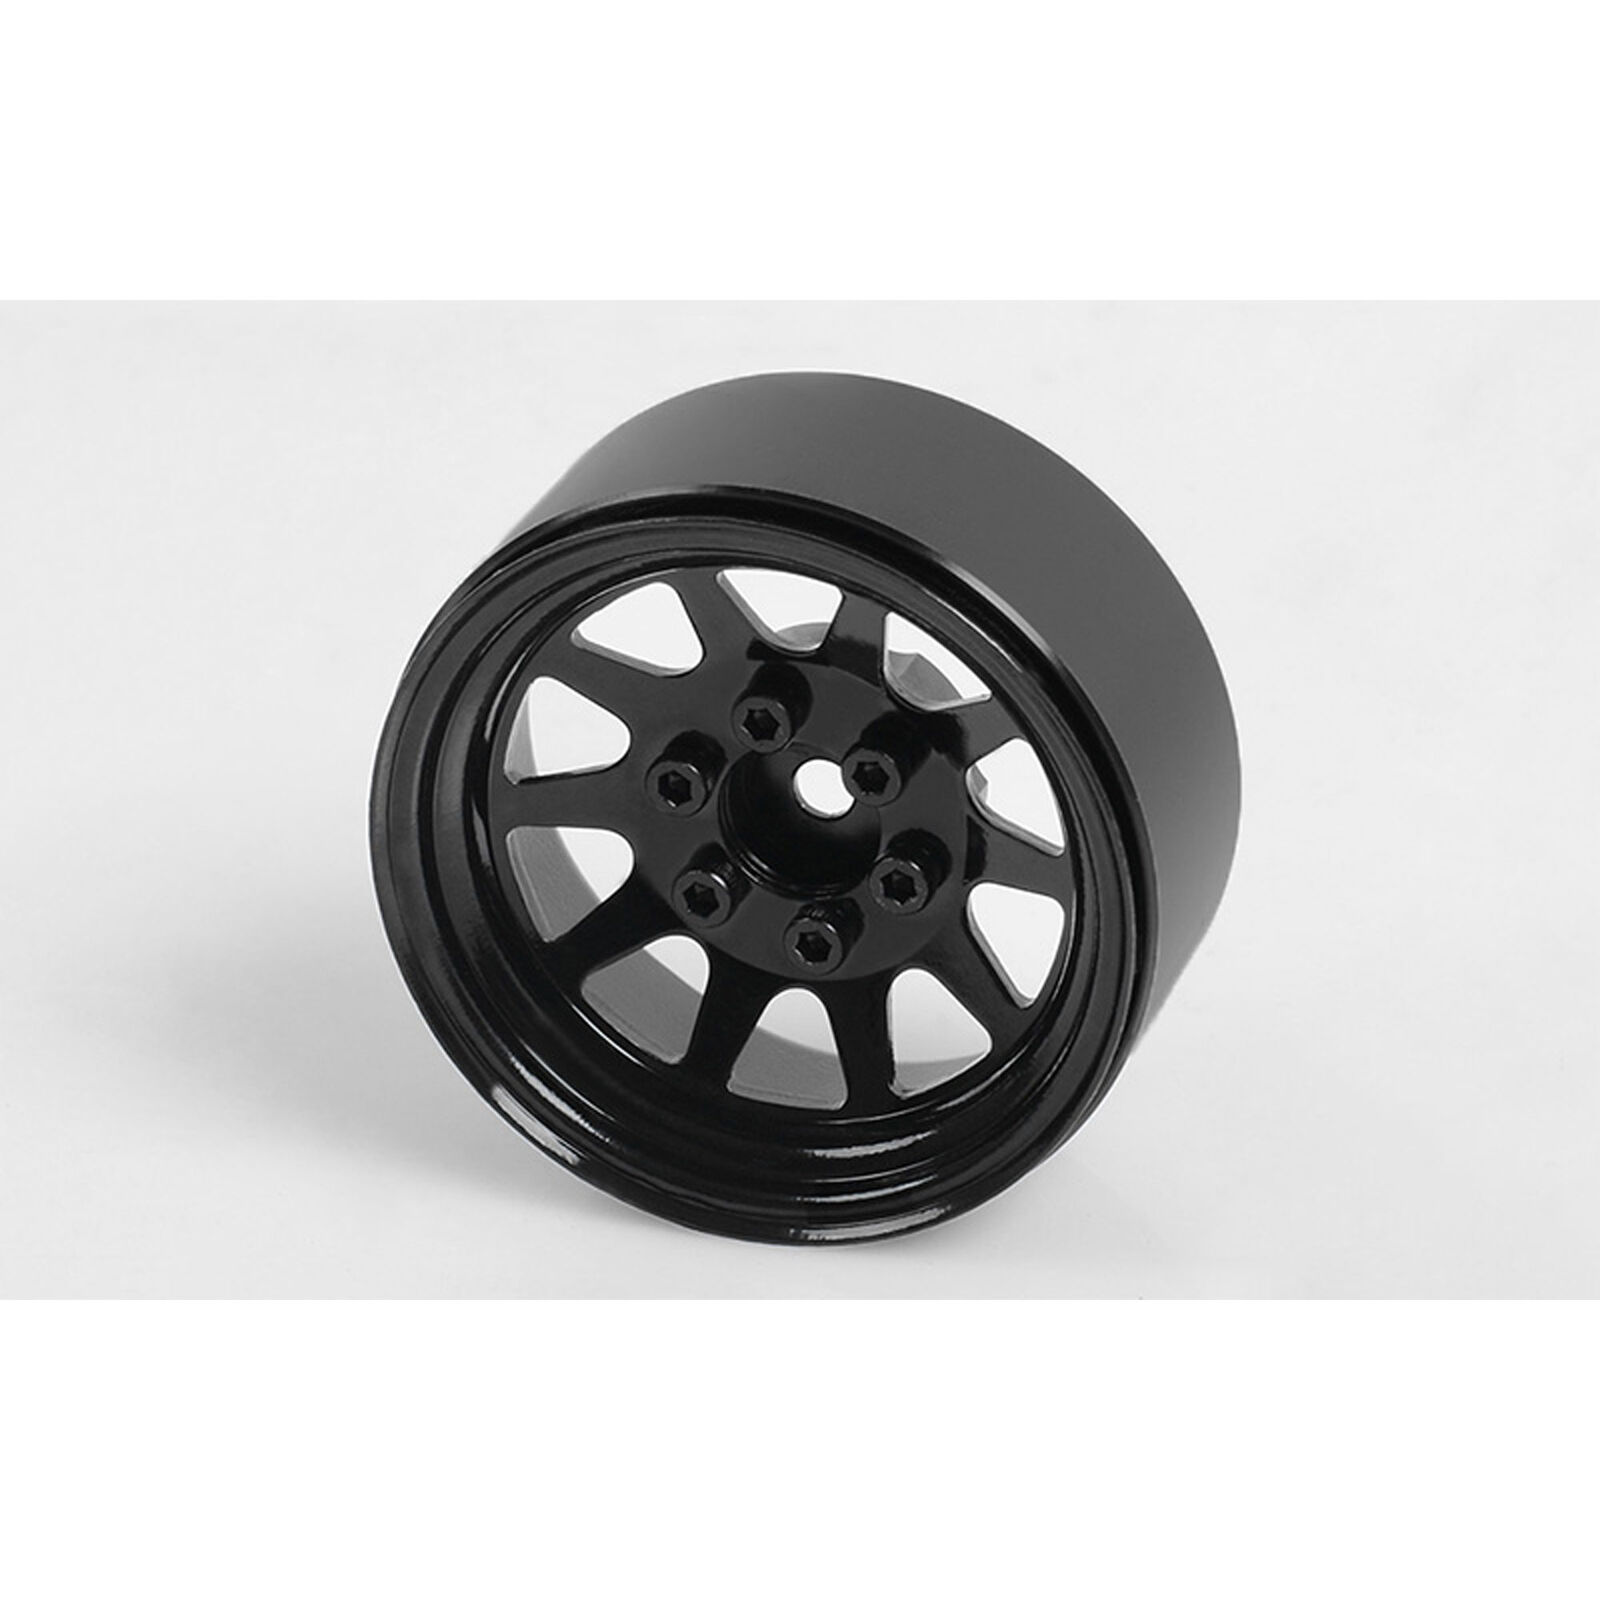 OEM Stamped Steel 1.9 Beadlock Wheels, Black (4)